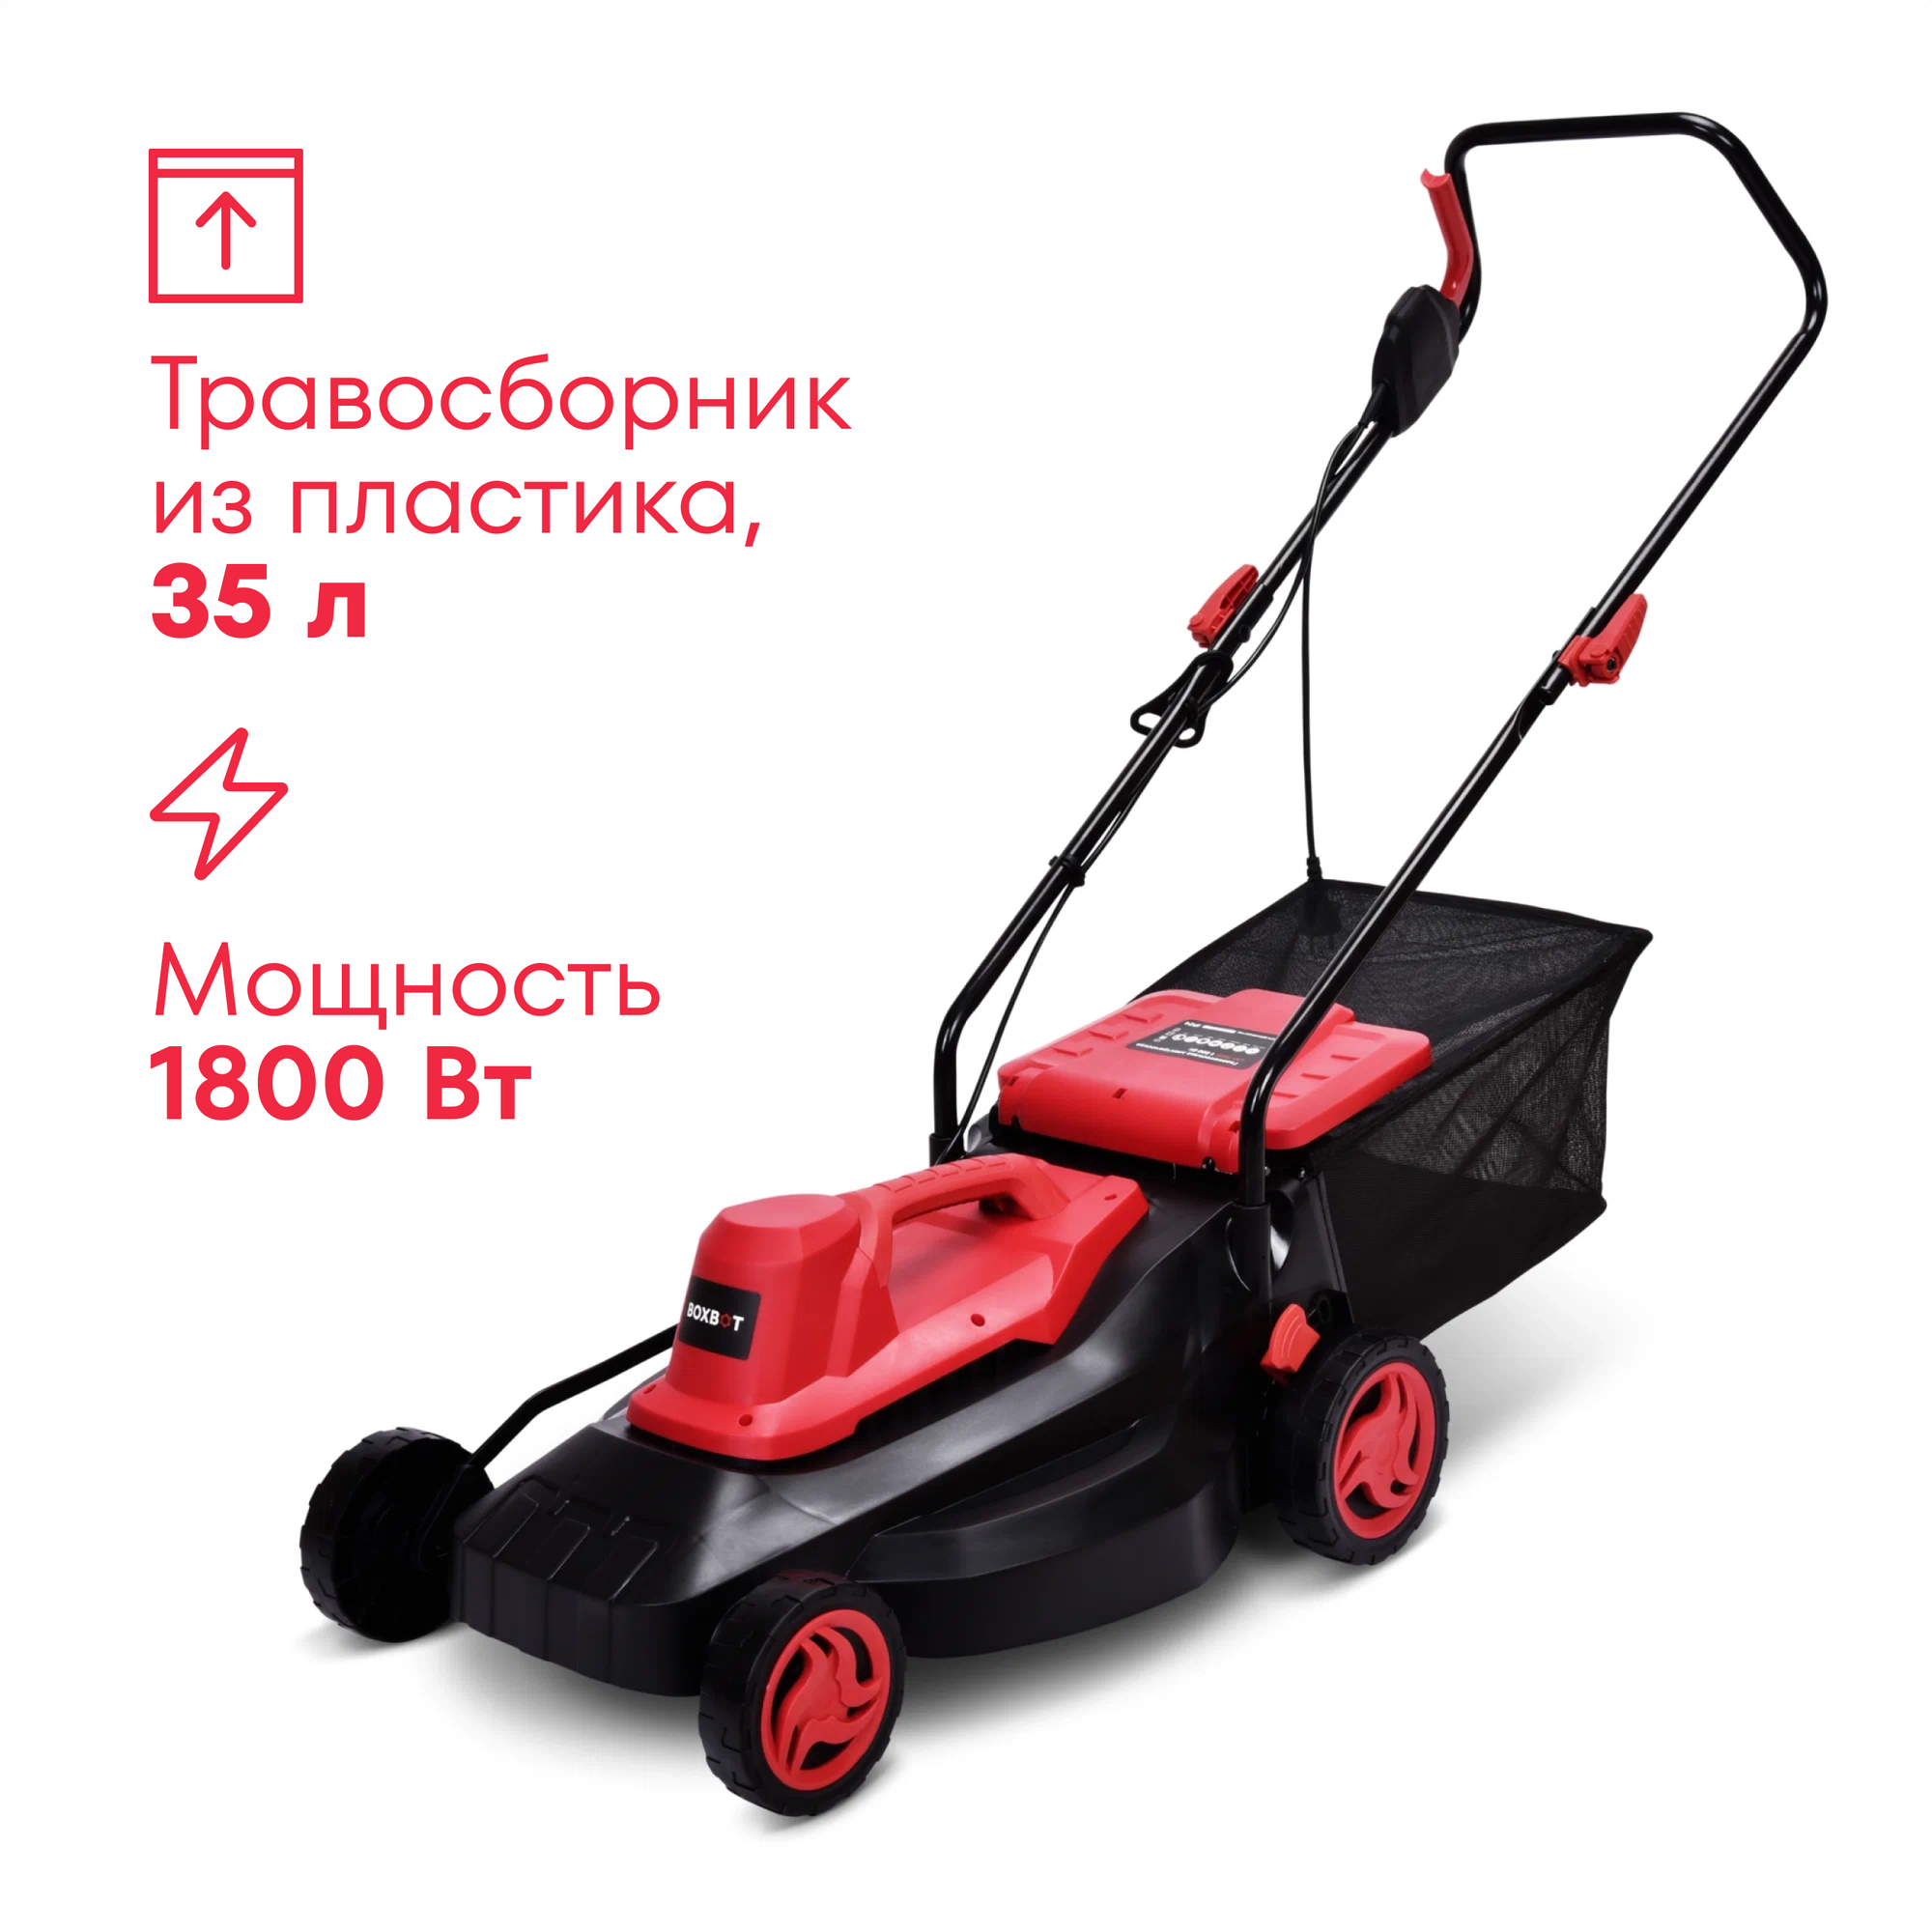 Электрическая газонокосилка Boxbot LM-1800, 1800 Вт